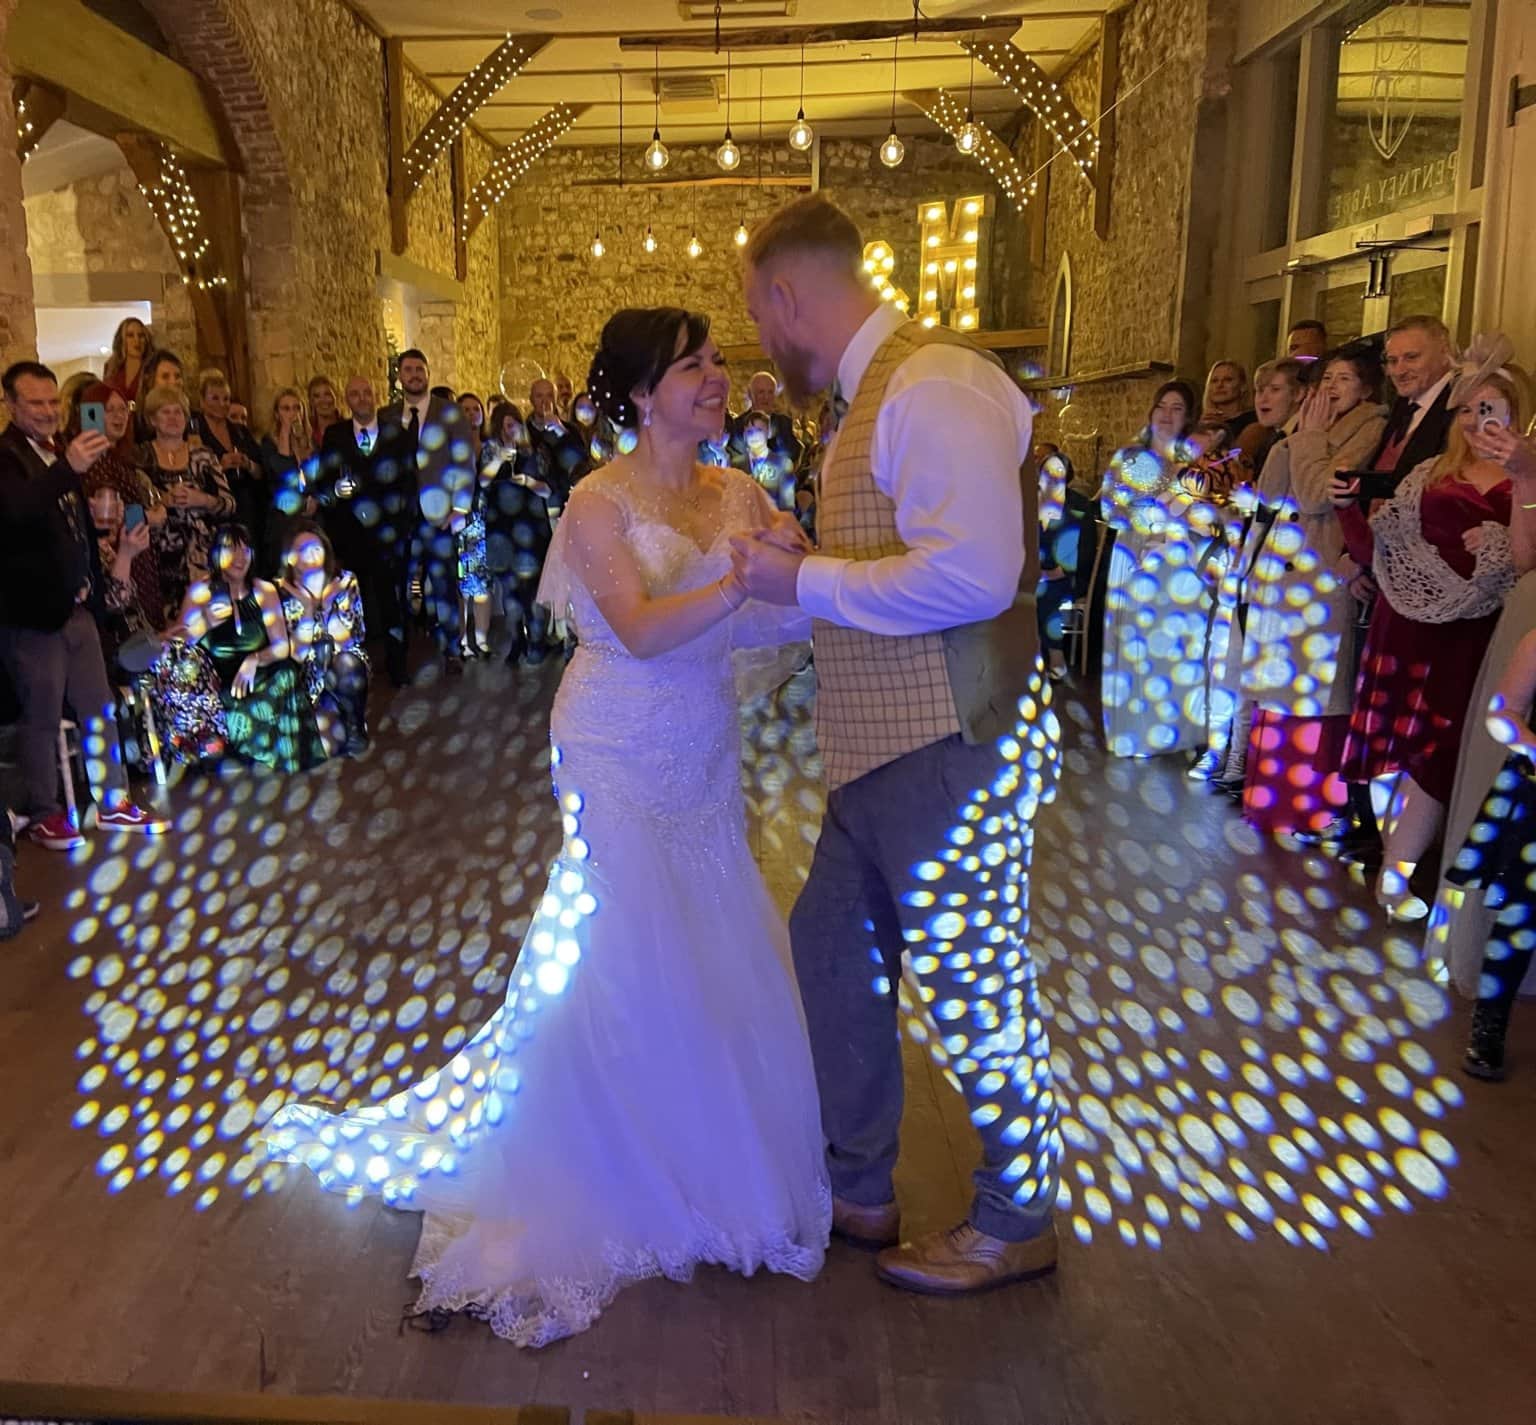 Bride & Groom wedding first dance in West Norfolk- getting married?